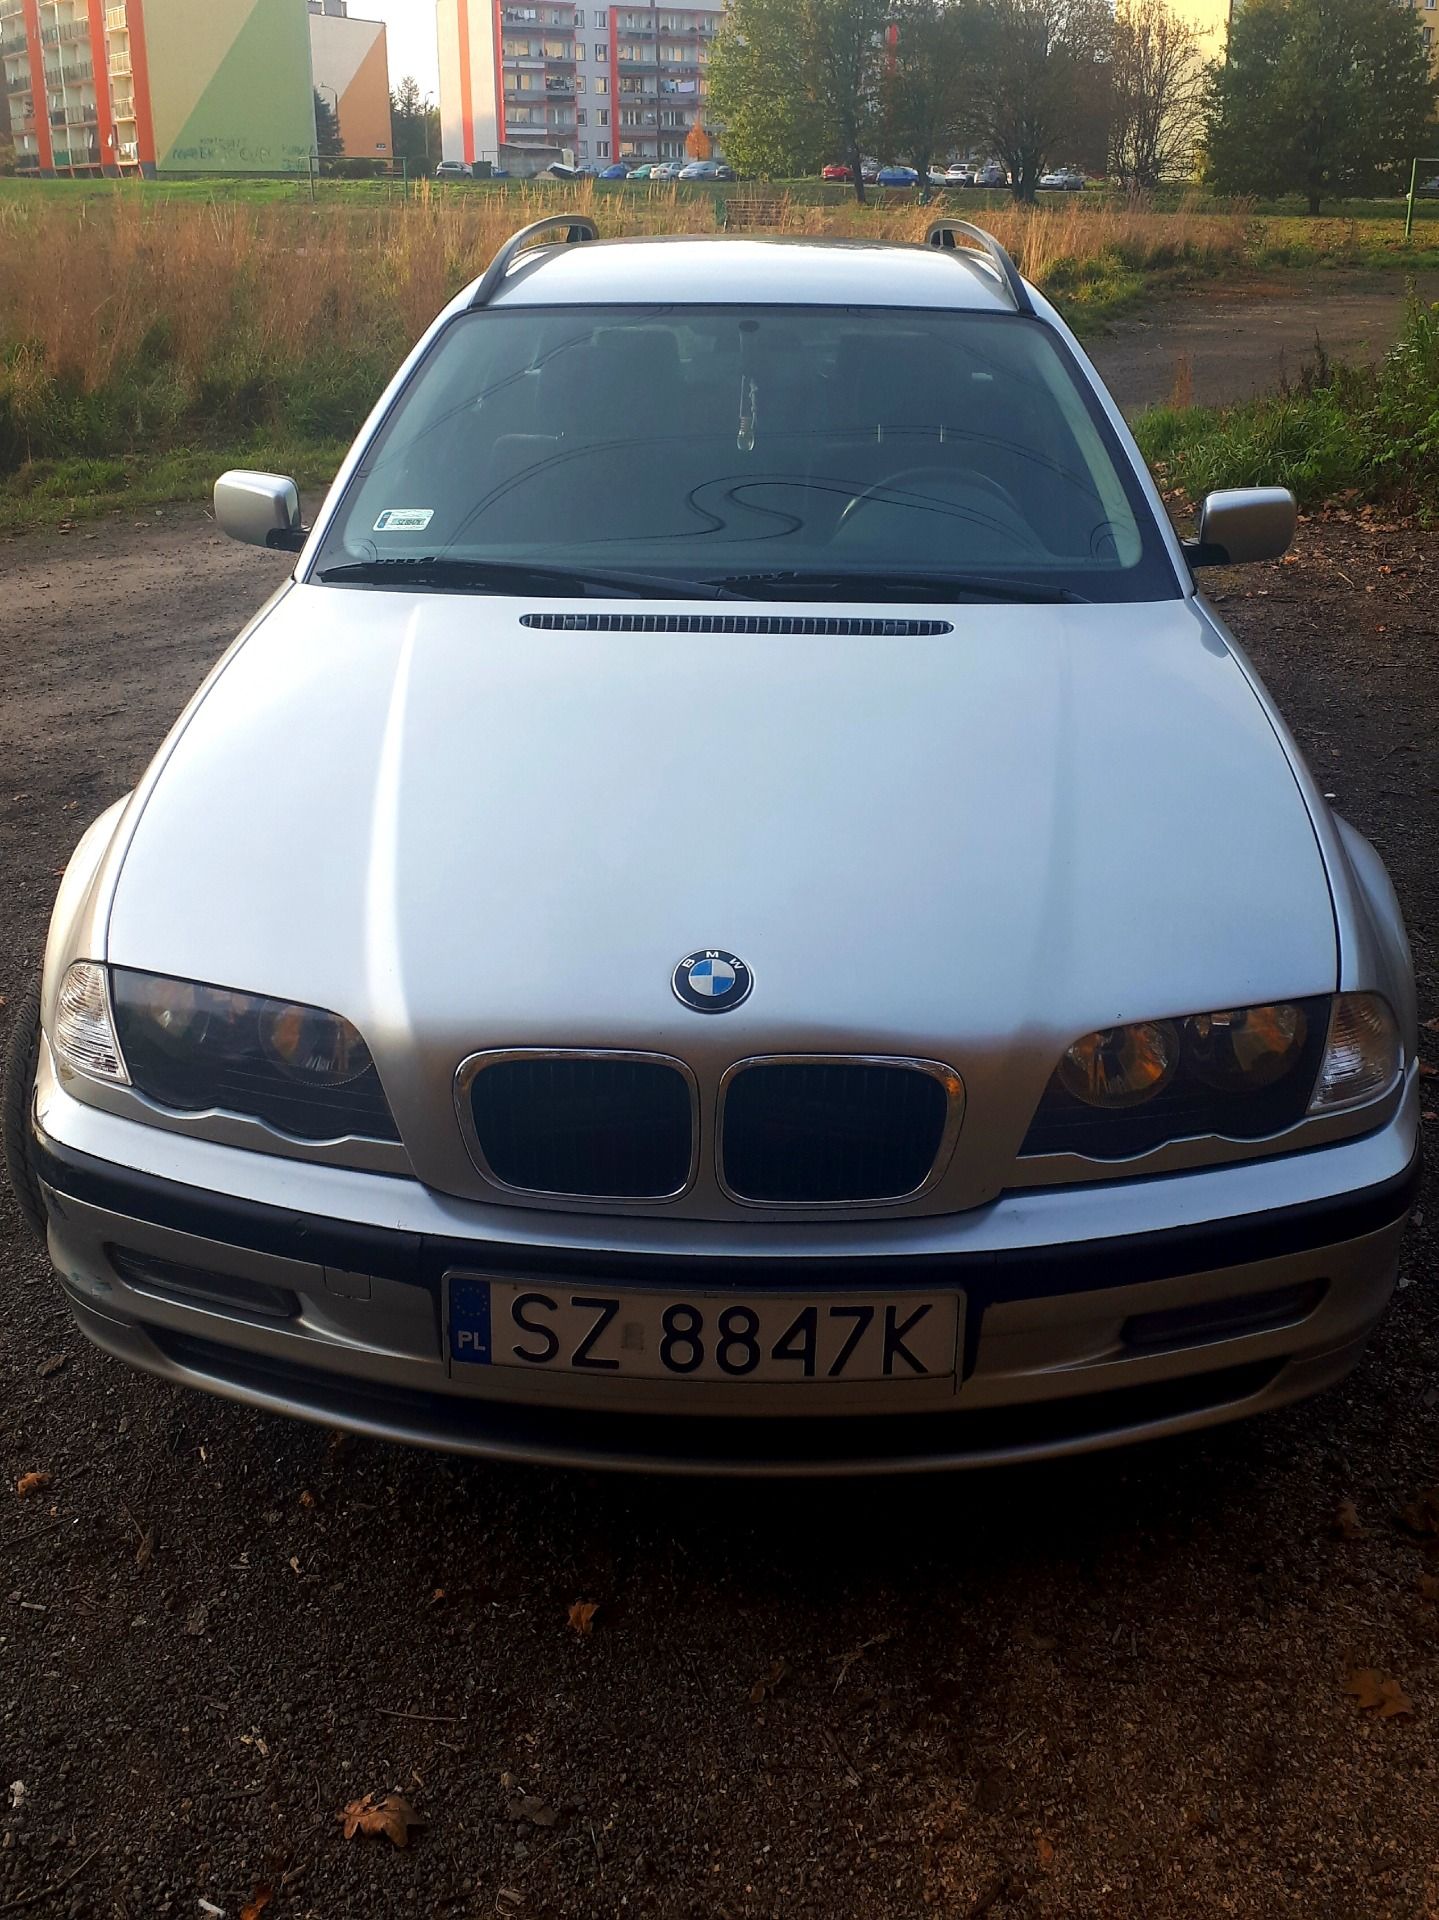 BMW E46 318i Touring 2000r. Zabrze, ogłoszenia